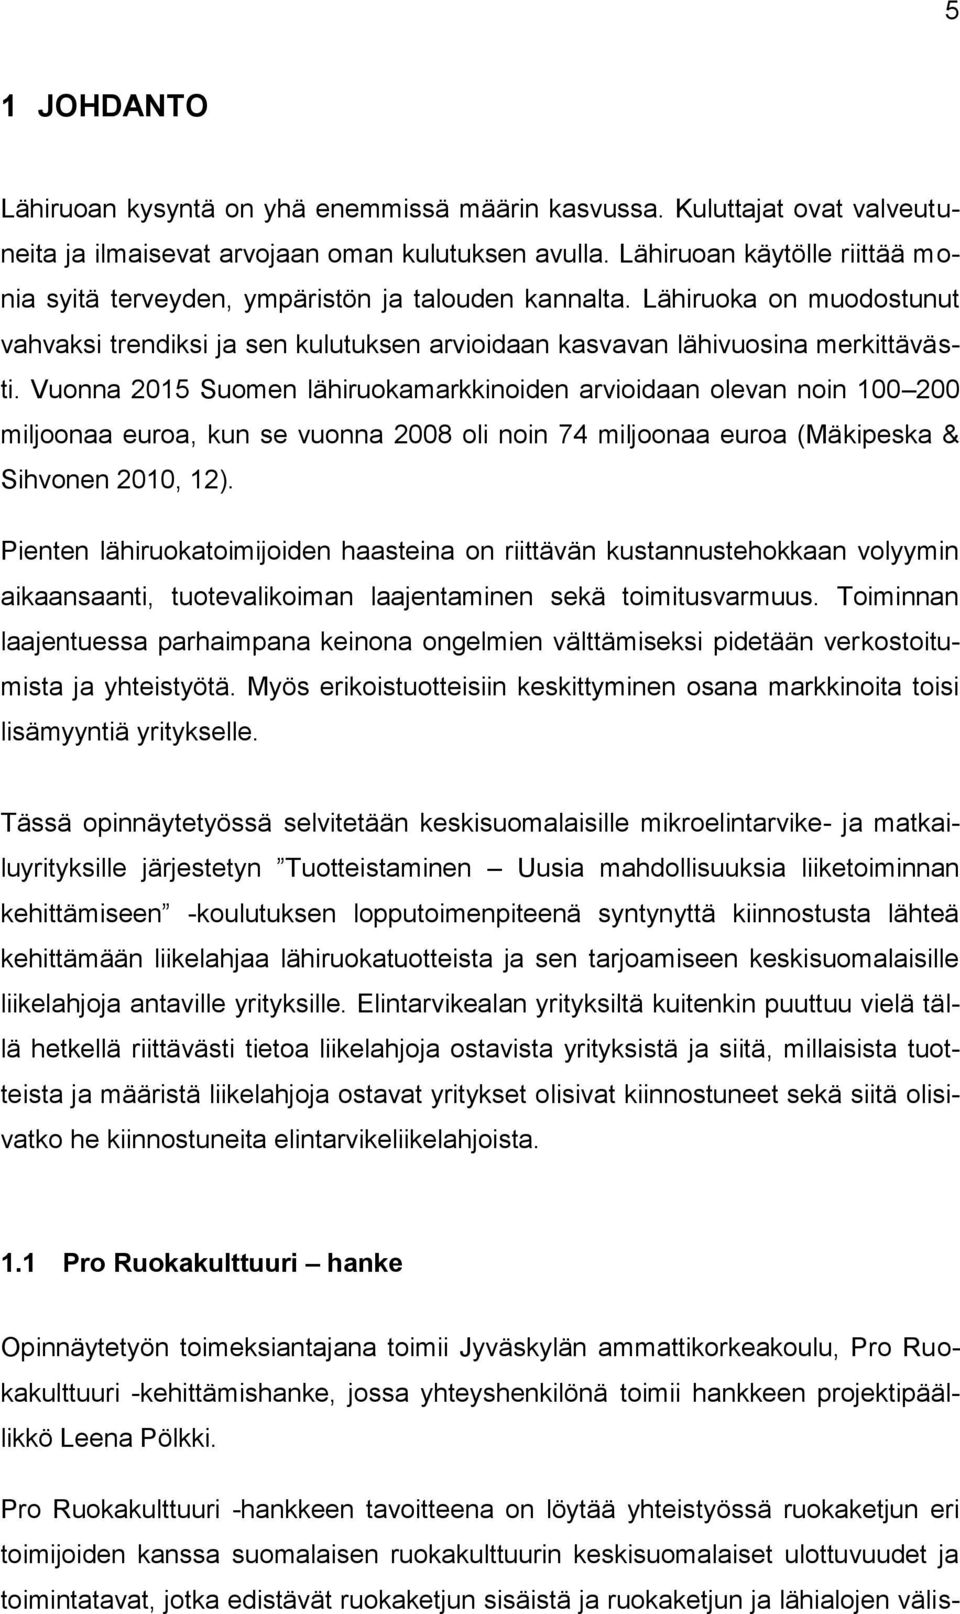 Vuonna 2015 Suomen lähiruokamarkkinoiden arvioidaan olevan noin 100 200 miljoonaa euroa, kun se vuonna 2008 oli noin 74 miljoonaa euroa (Mäkipeska & Sihvonen 2010, 12).